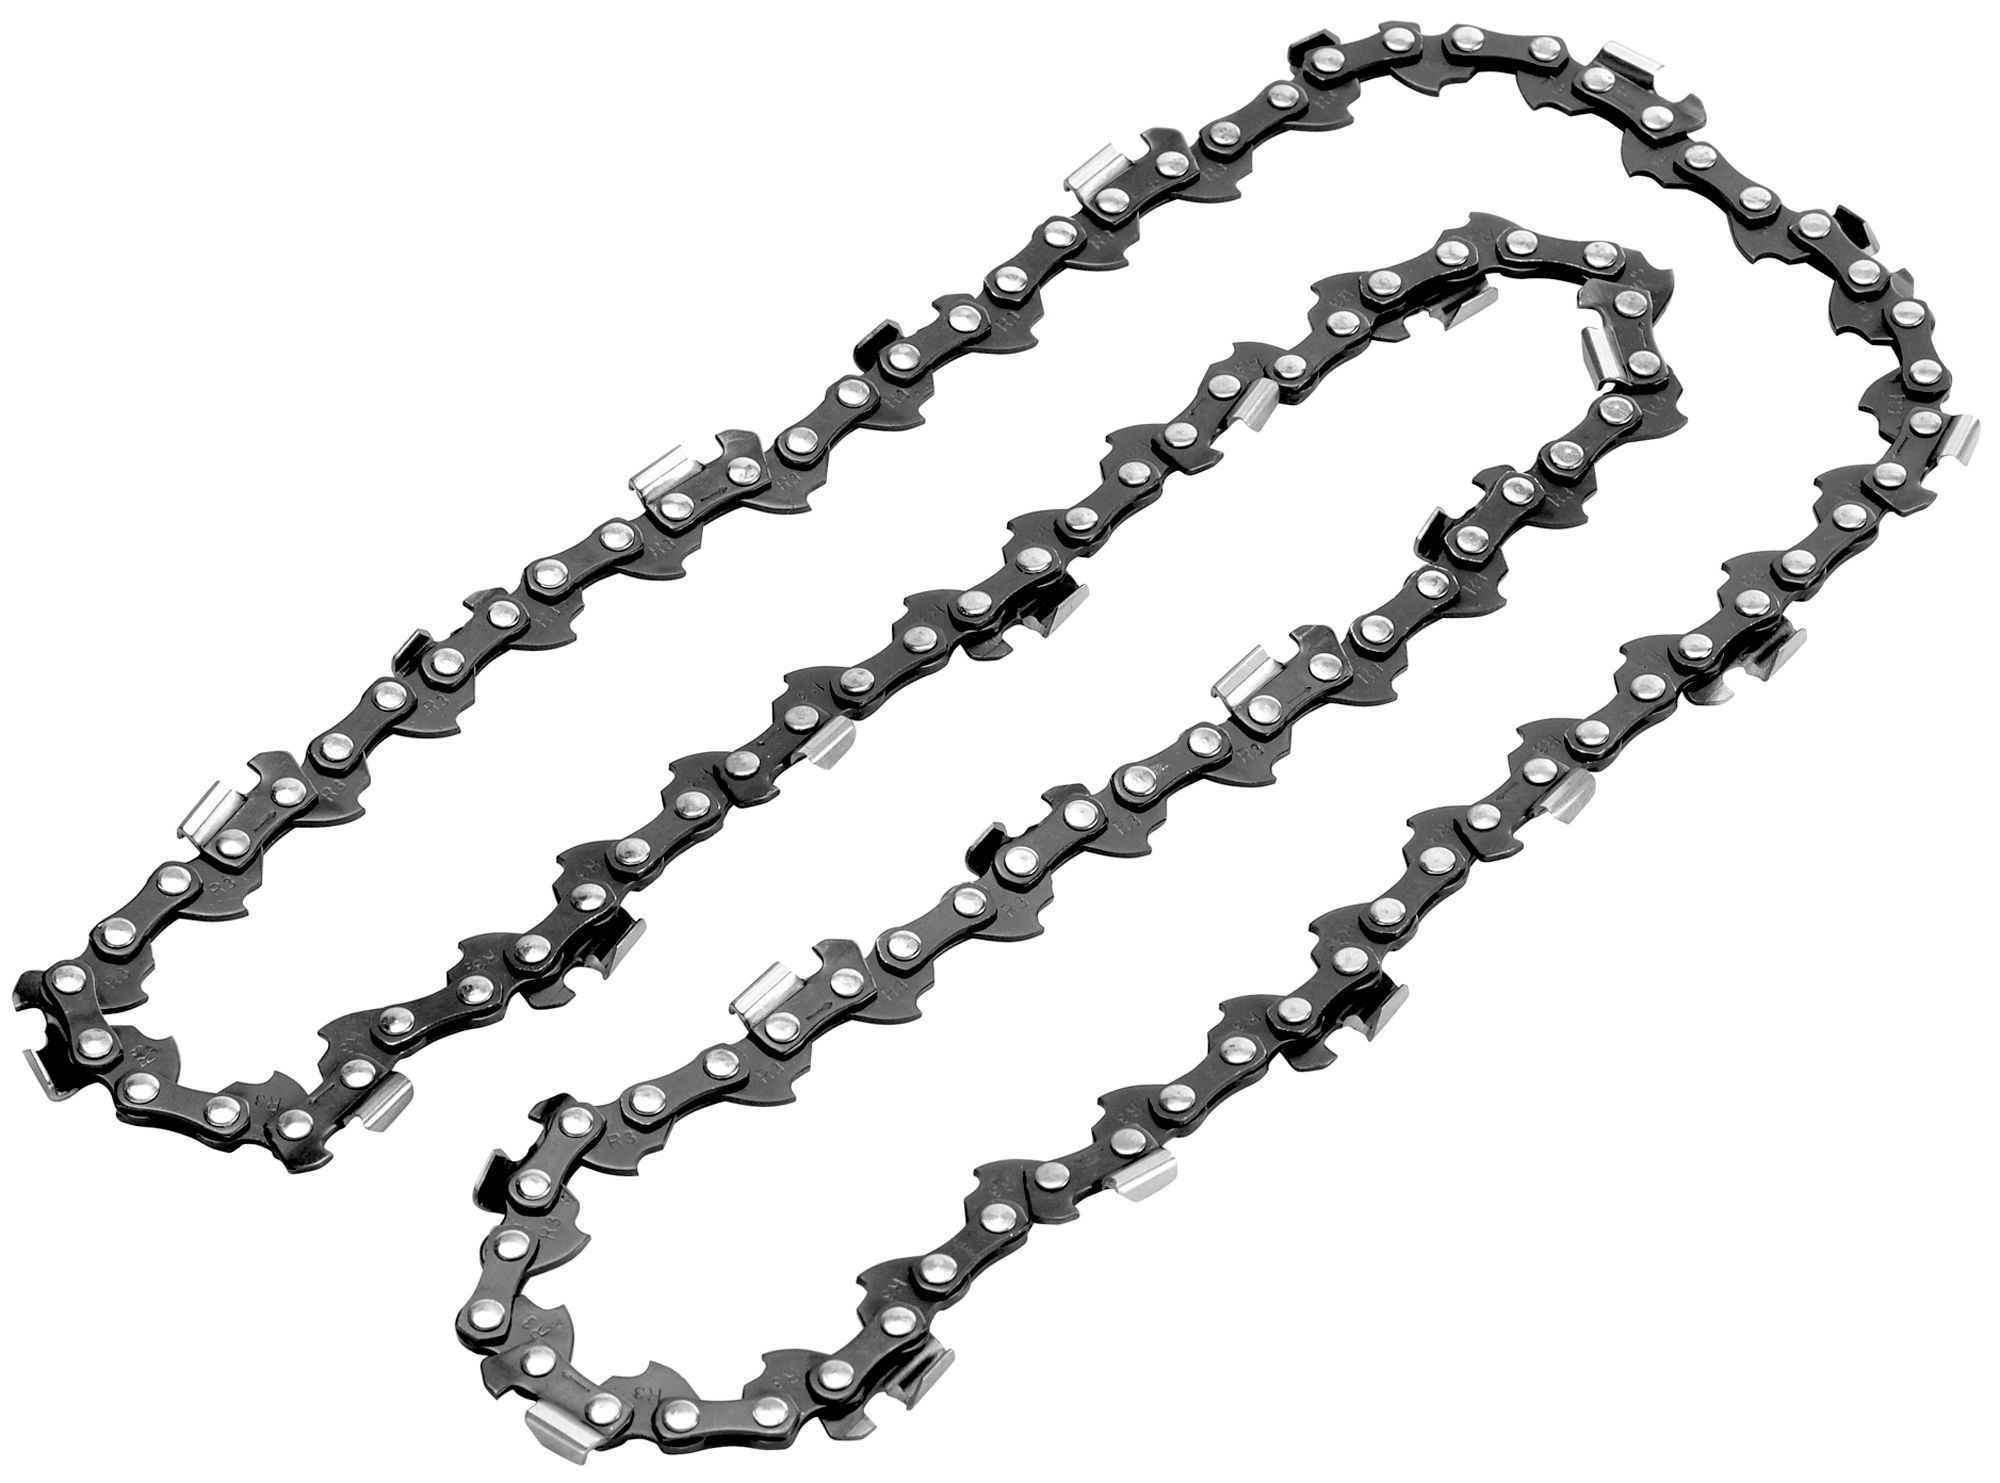 B&Q CH056 ⅜" Chainsaw chain